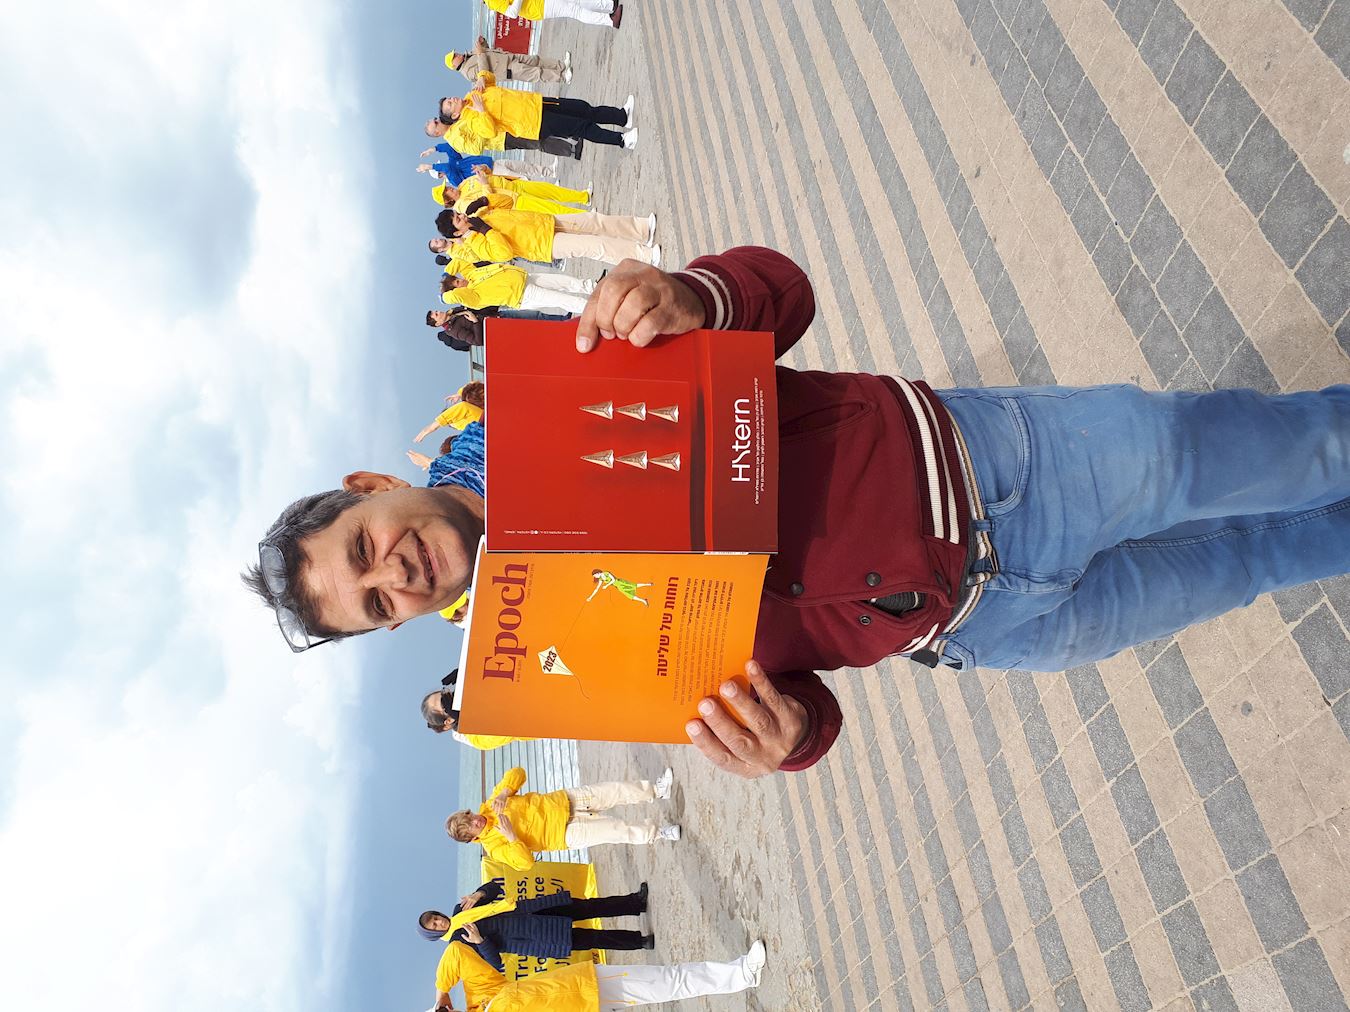 '图6：沙哈尔·亨到海滩要阅读《大纪元杂志》。他说：“我反对共产主义和它对人们的控制。”'